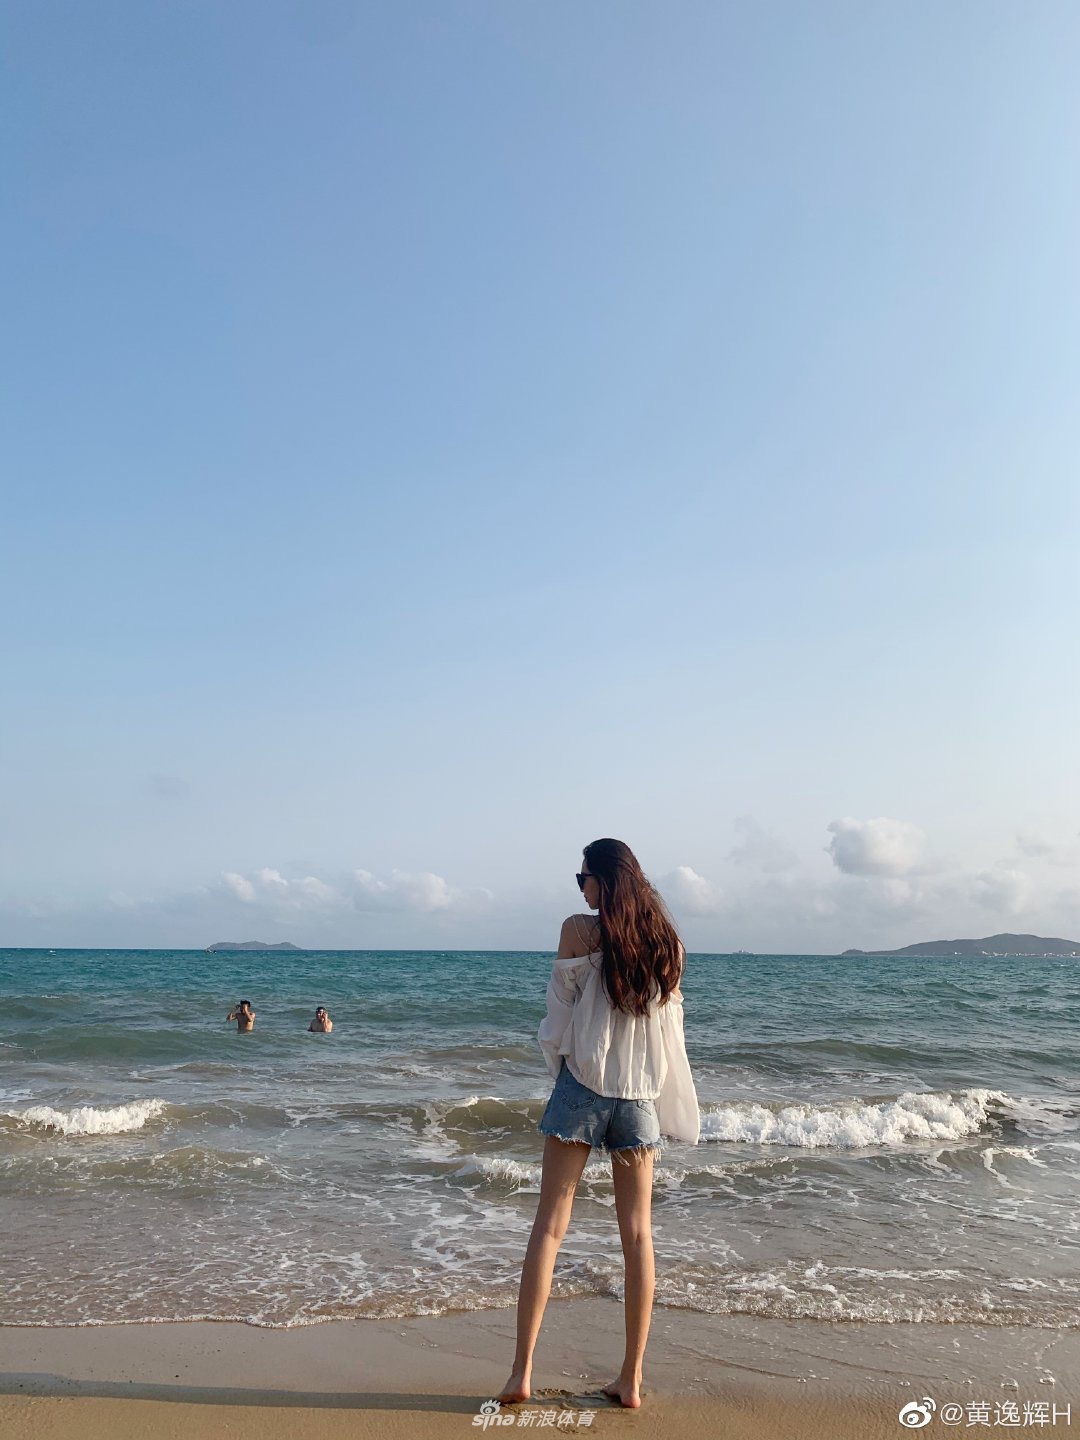 4月3日,cba大红大紫的篮球宝贝黄逸辉在微博晒出在海滩游玩的美照,带